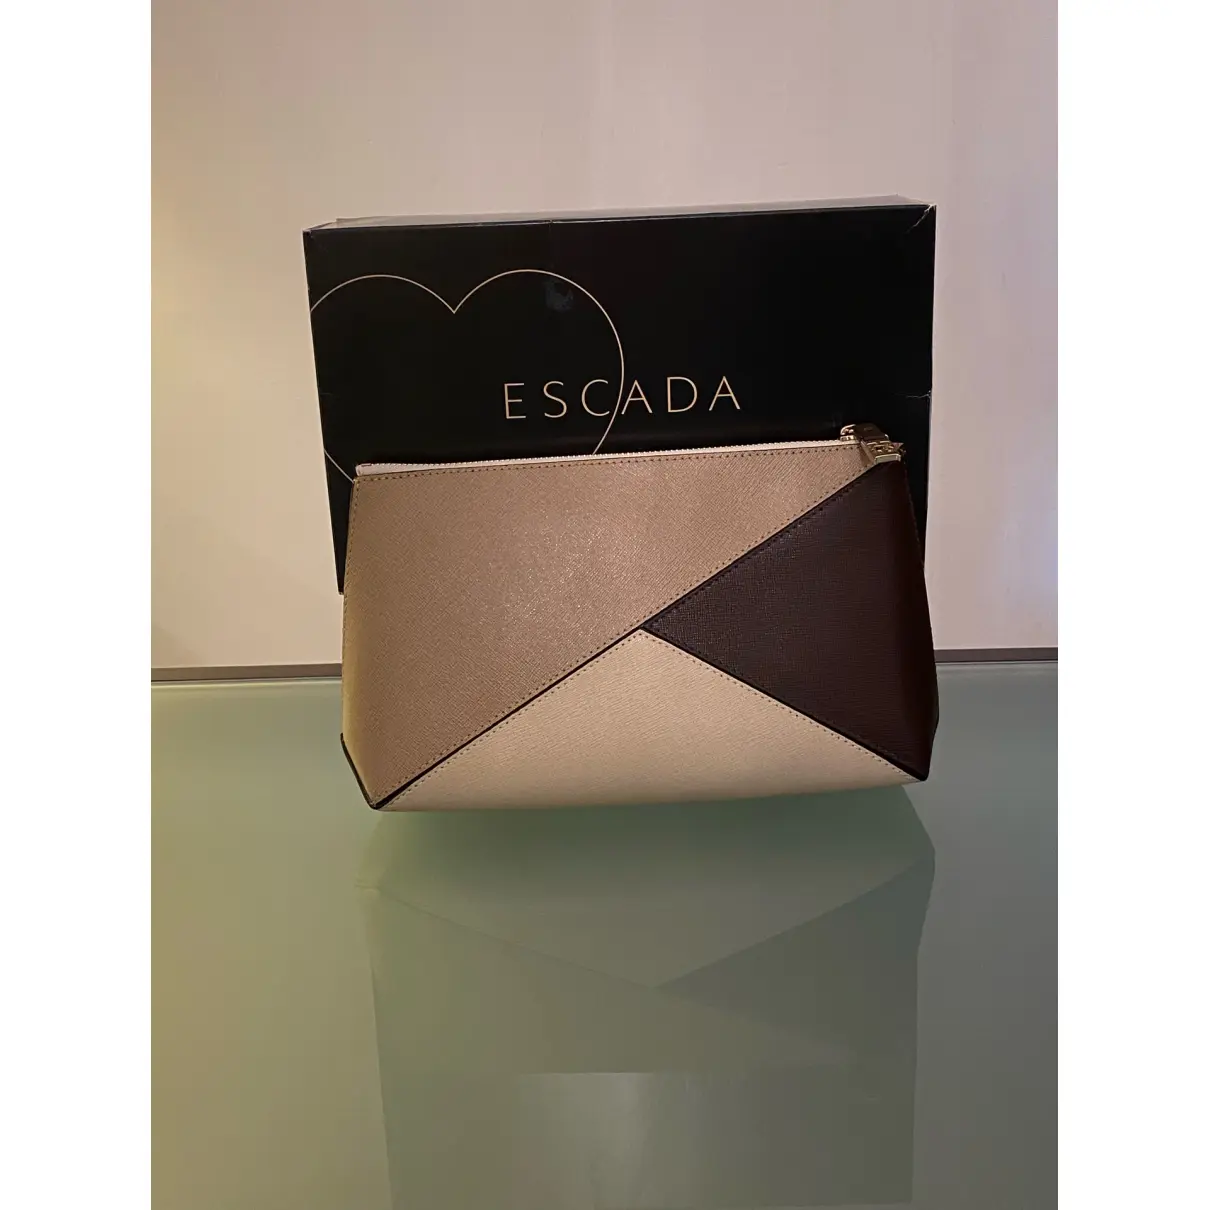 Buy Escada Leather clutch bag online